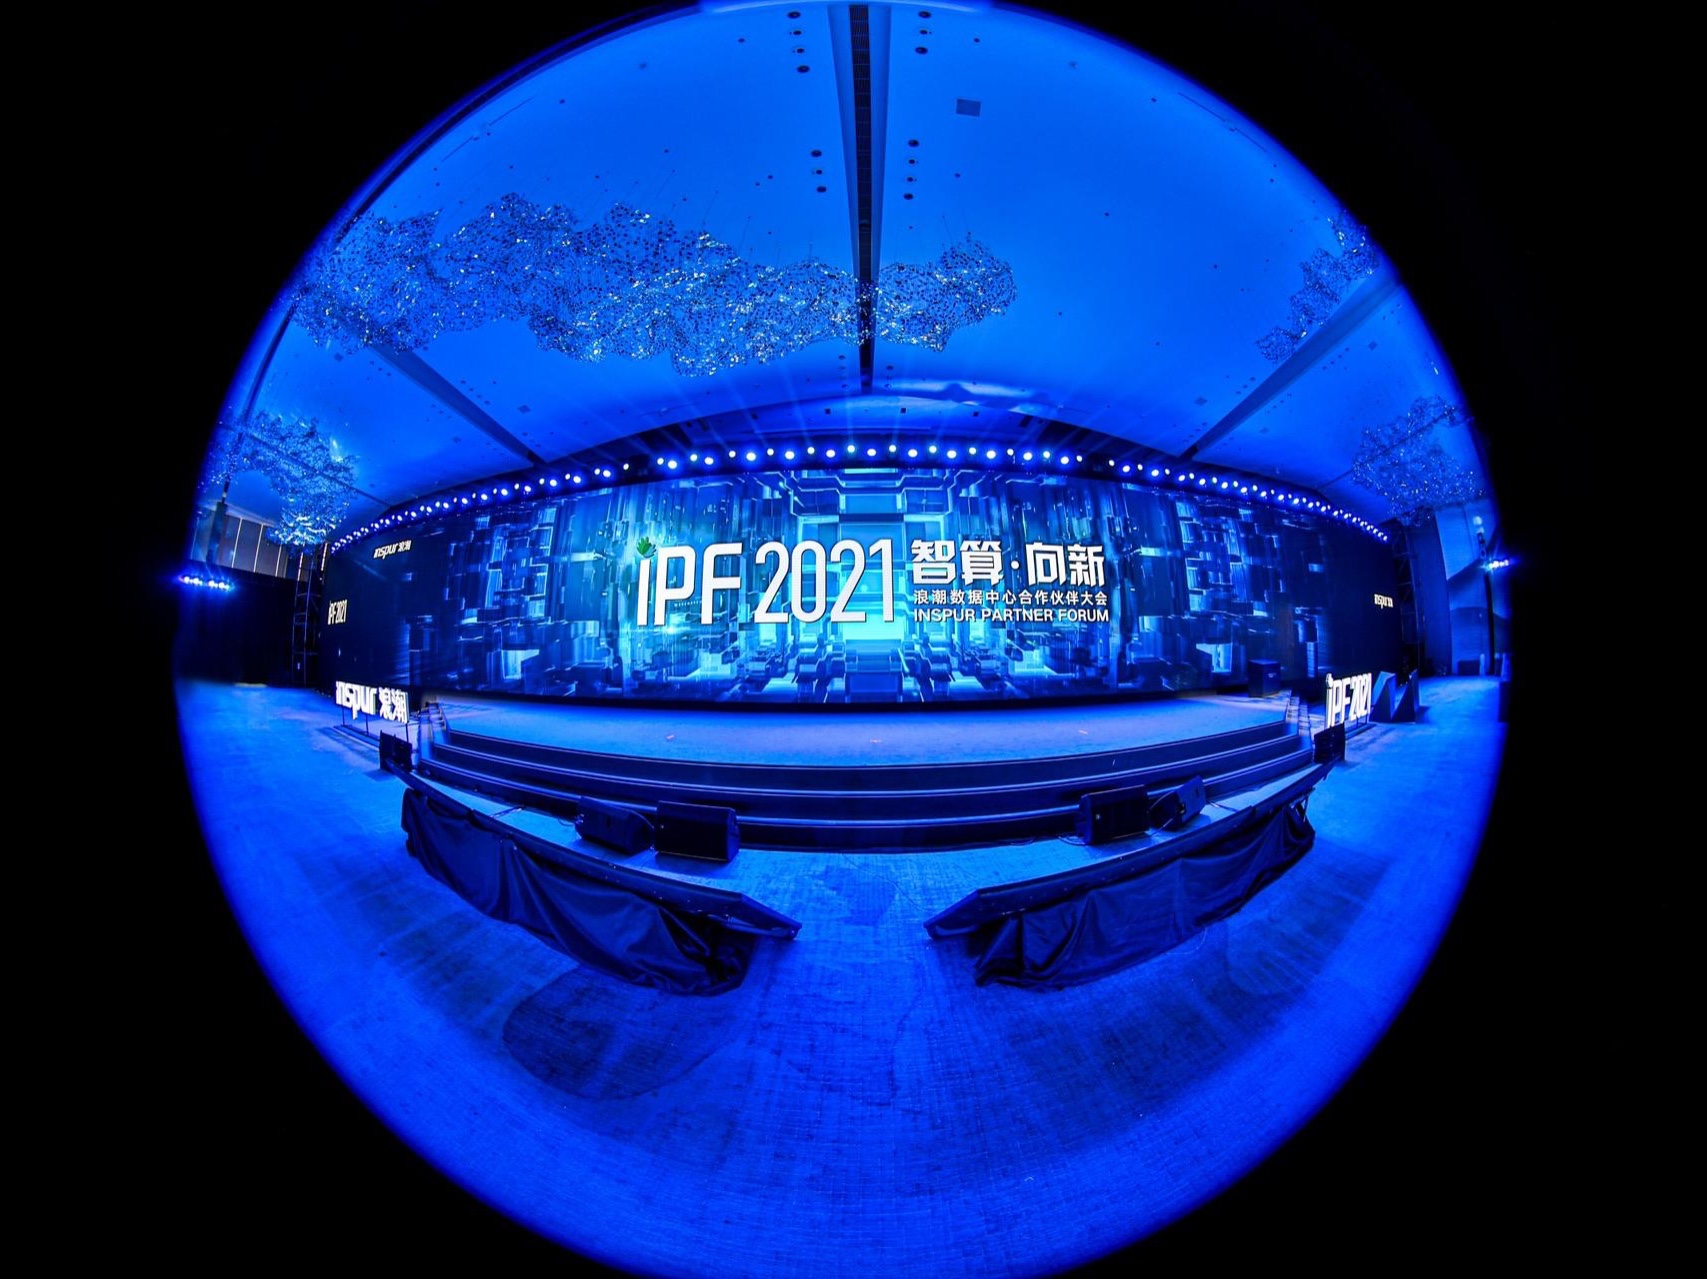 IPF2021浪潮数据中心合作伙伴大会